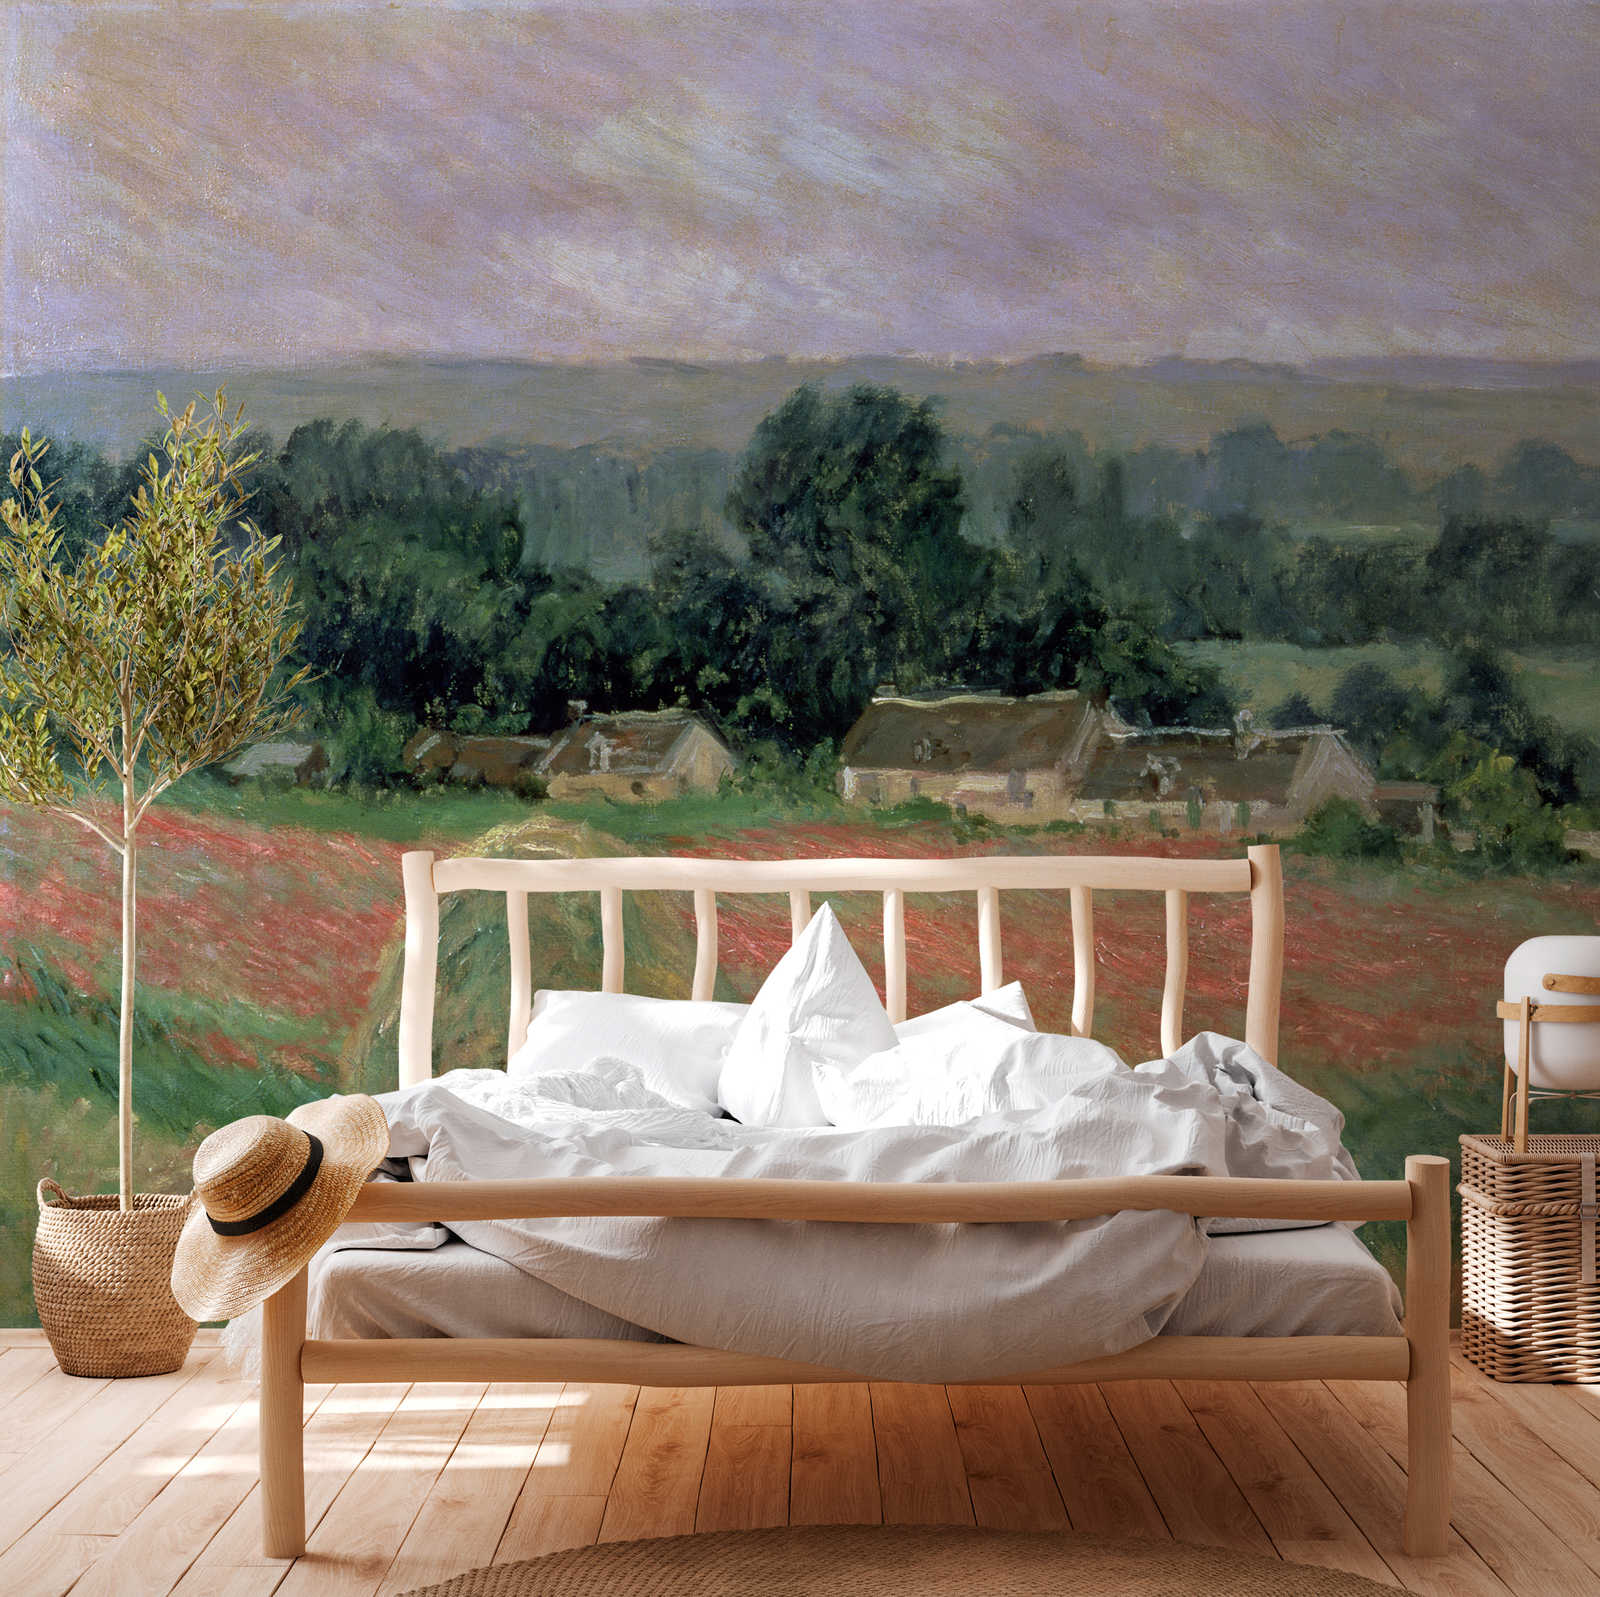             Fototapete "Heuhaufen in Giverny" von Claude Monet
        